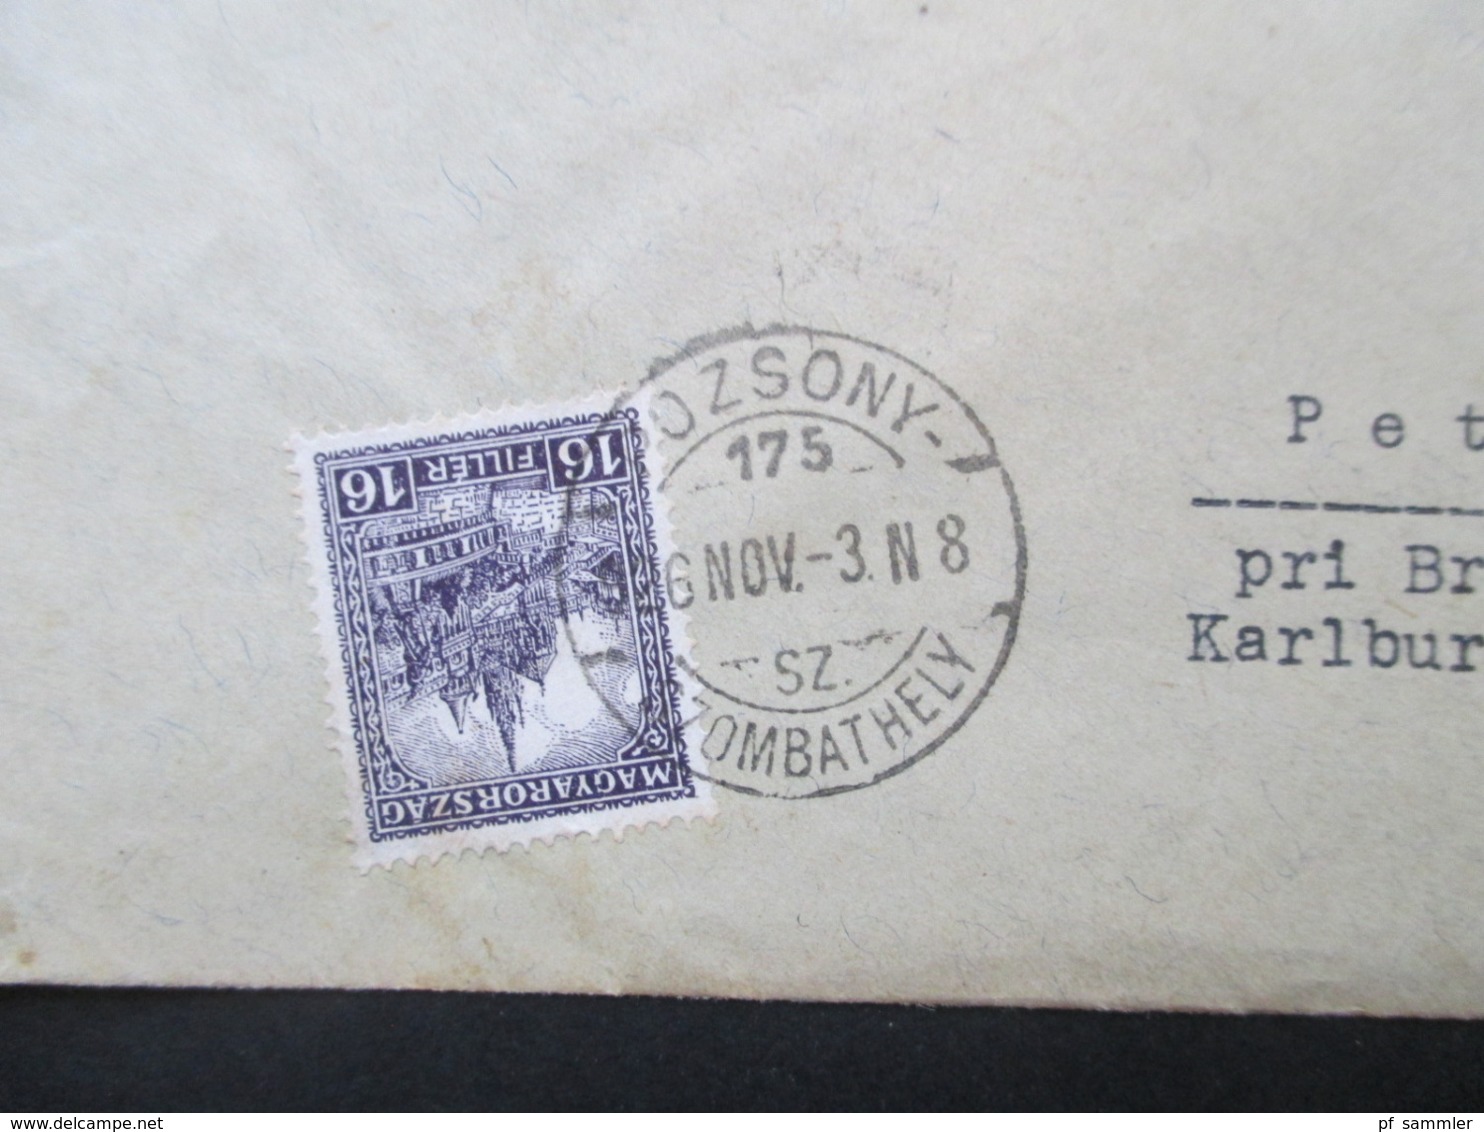 Ungarn 1926 Freimarken Fischerbastei Nr. 418 MeF Umschlag Des Stephaneum Nach Petrzalka Pei Bratislava - Storia Postale